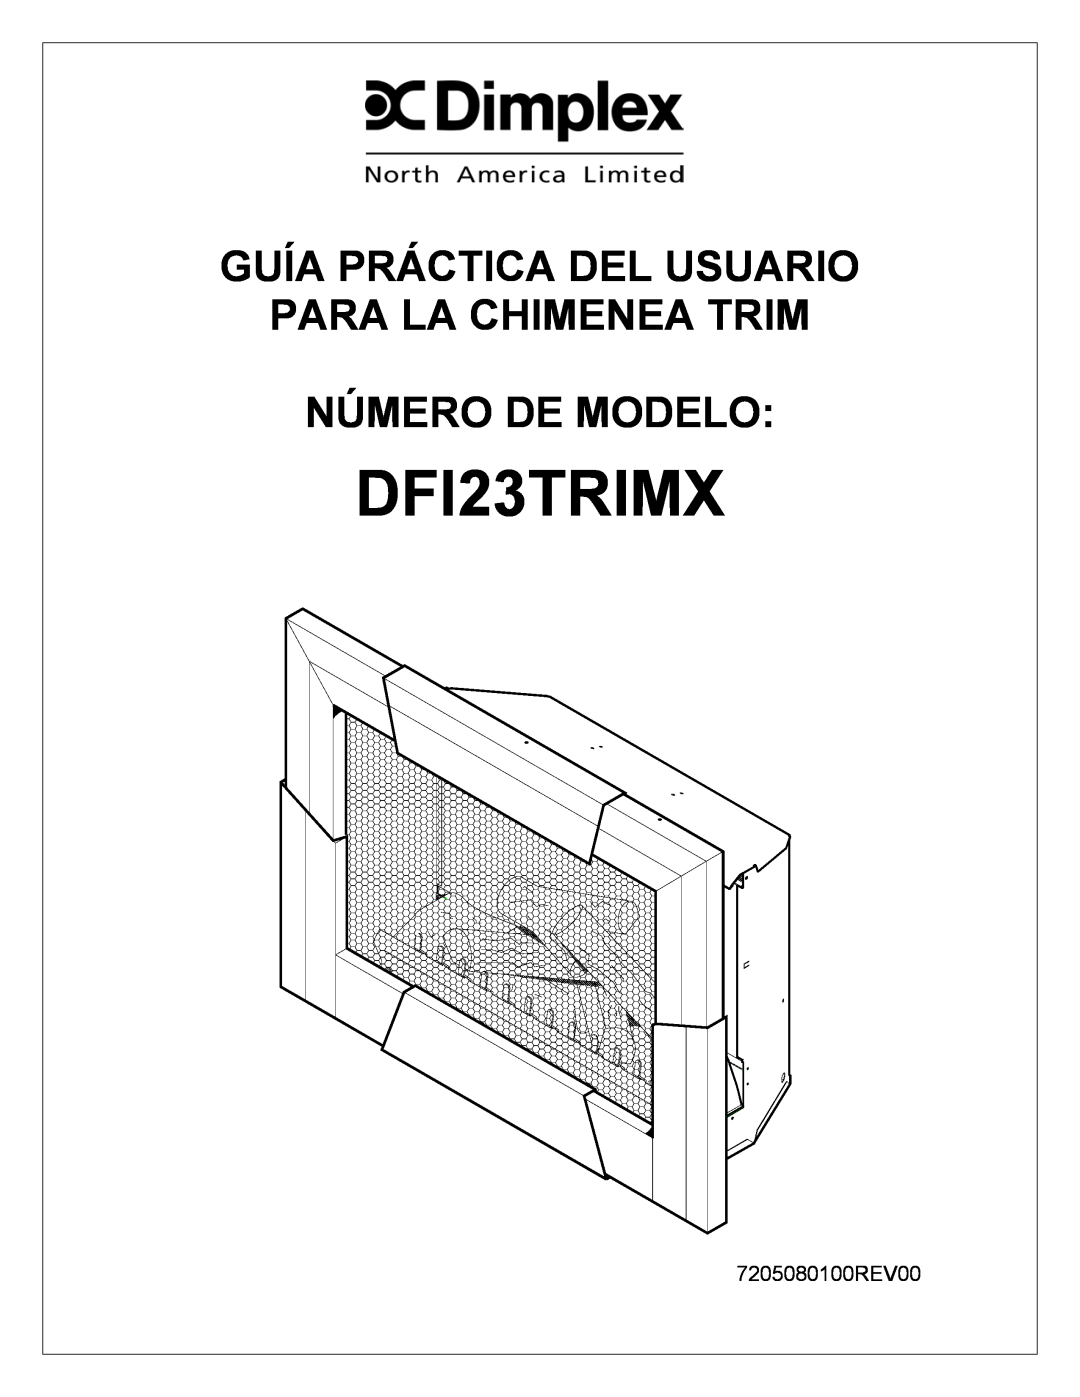 Dimplex DFI23TRIMX manual Guía Práctica Del Usuario, Para La Chimenea Trim, Número De Modelo, 7205080100REV00 